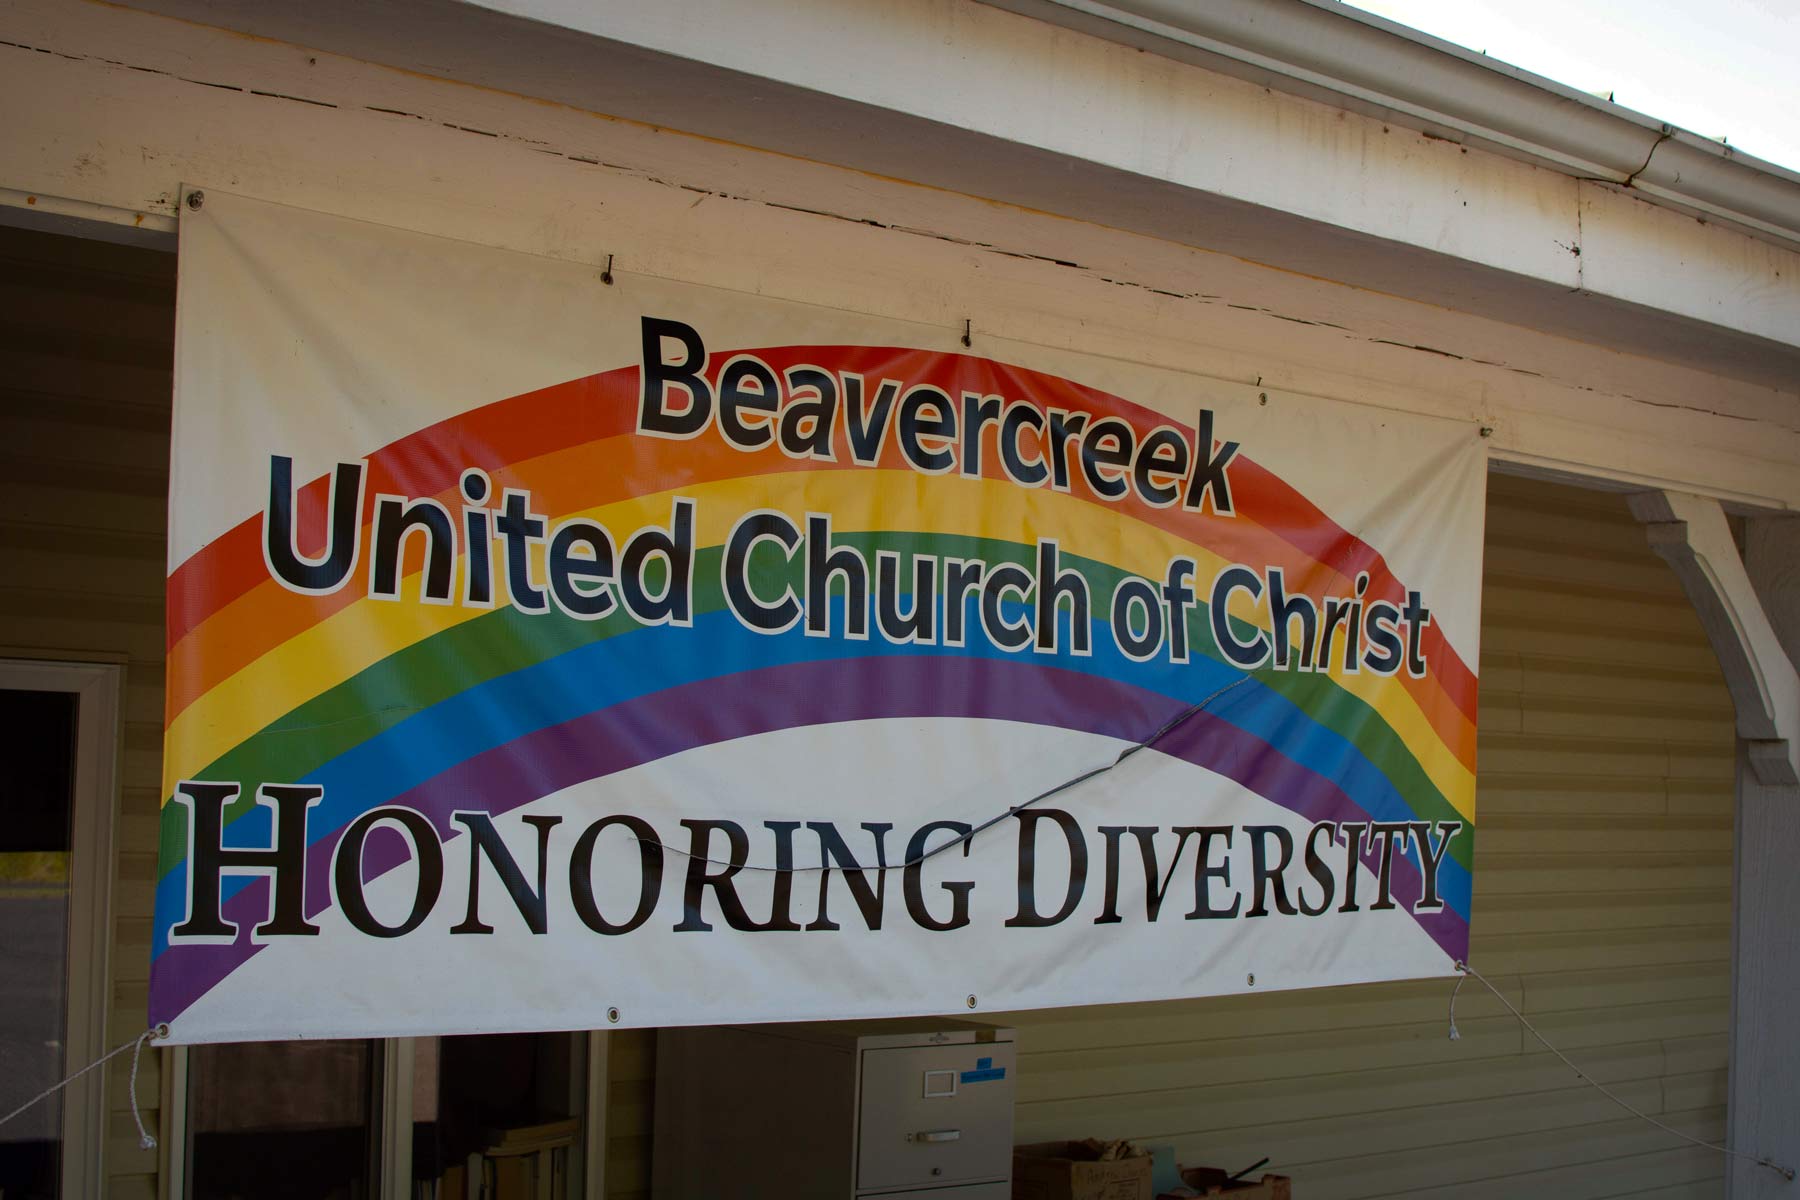 Banner reading Beavercreek United Church of Christ Honoring Diversity